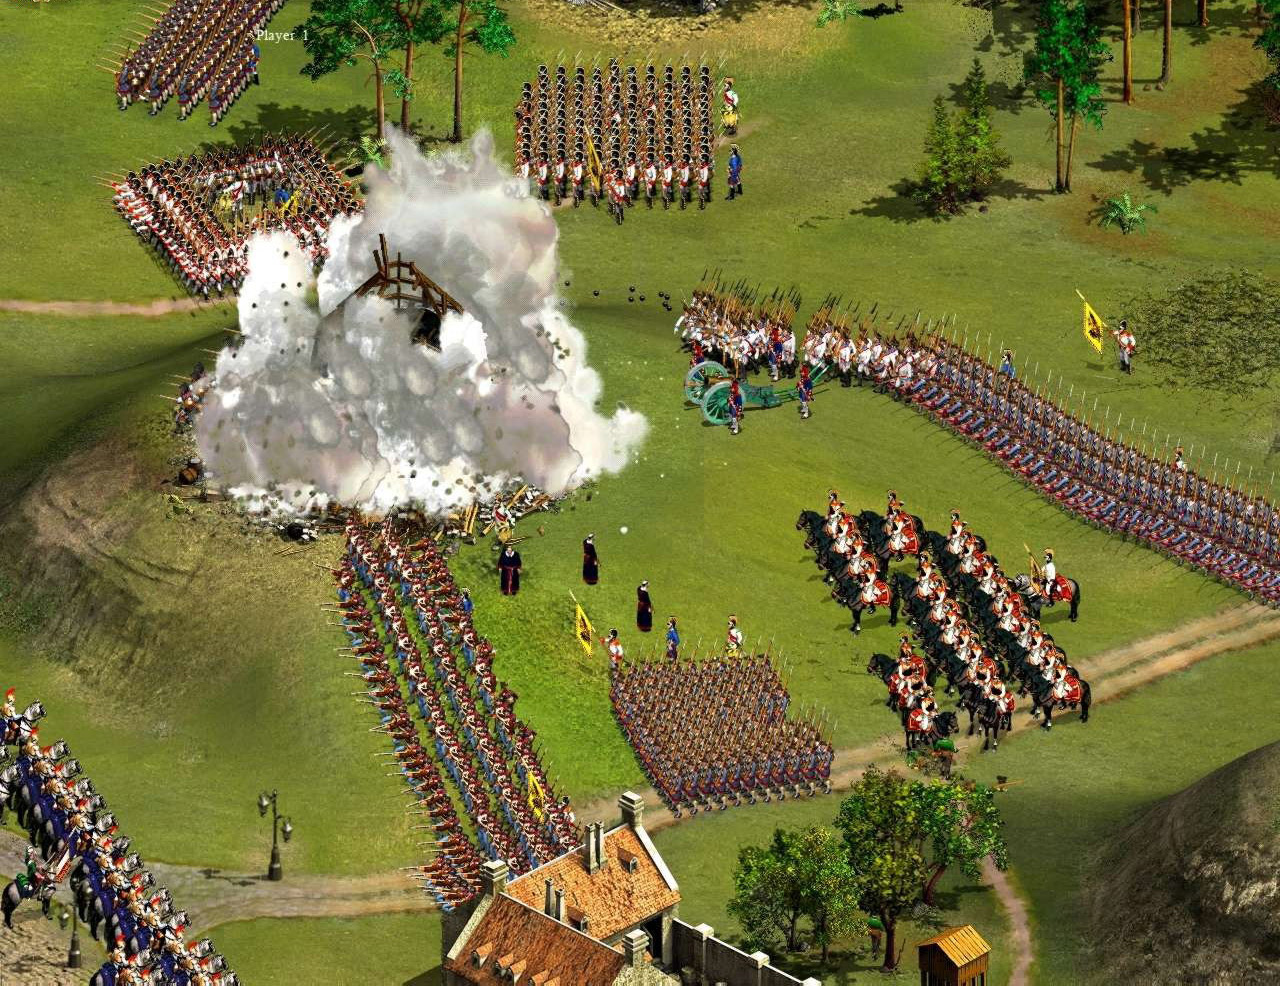 Cossacks II: Napoleonic Wars screenshot